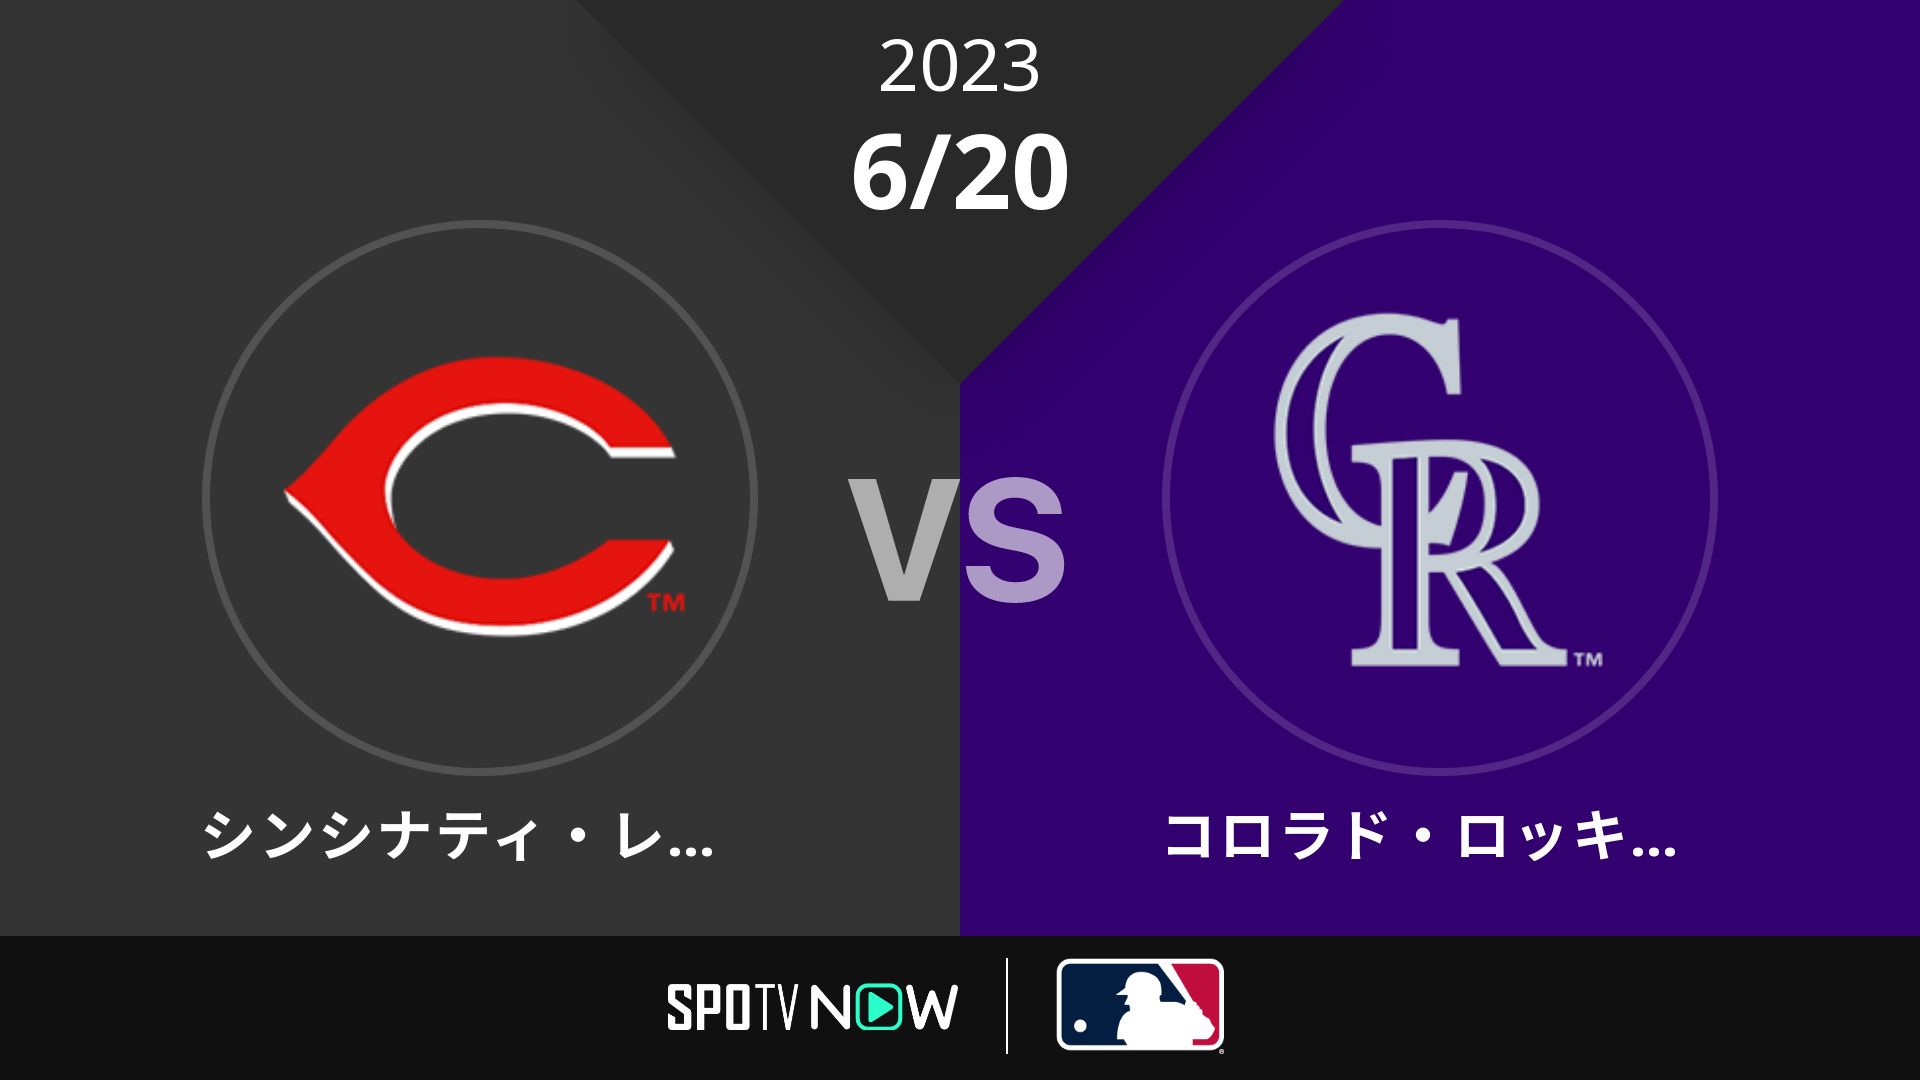 2023/6/20 レッズ vs ロッキーズ [MLB]